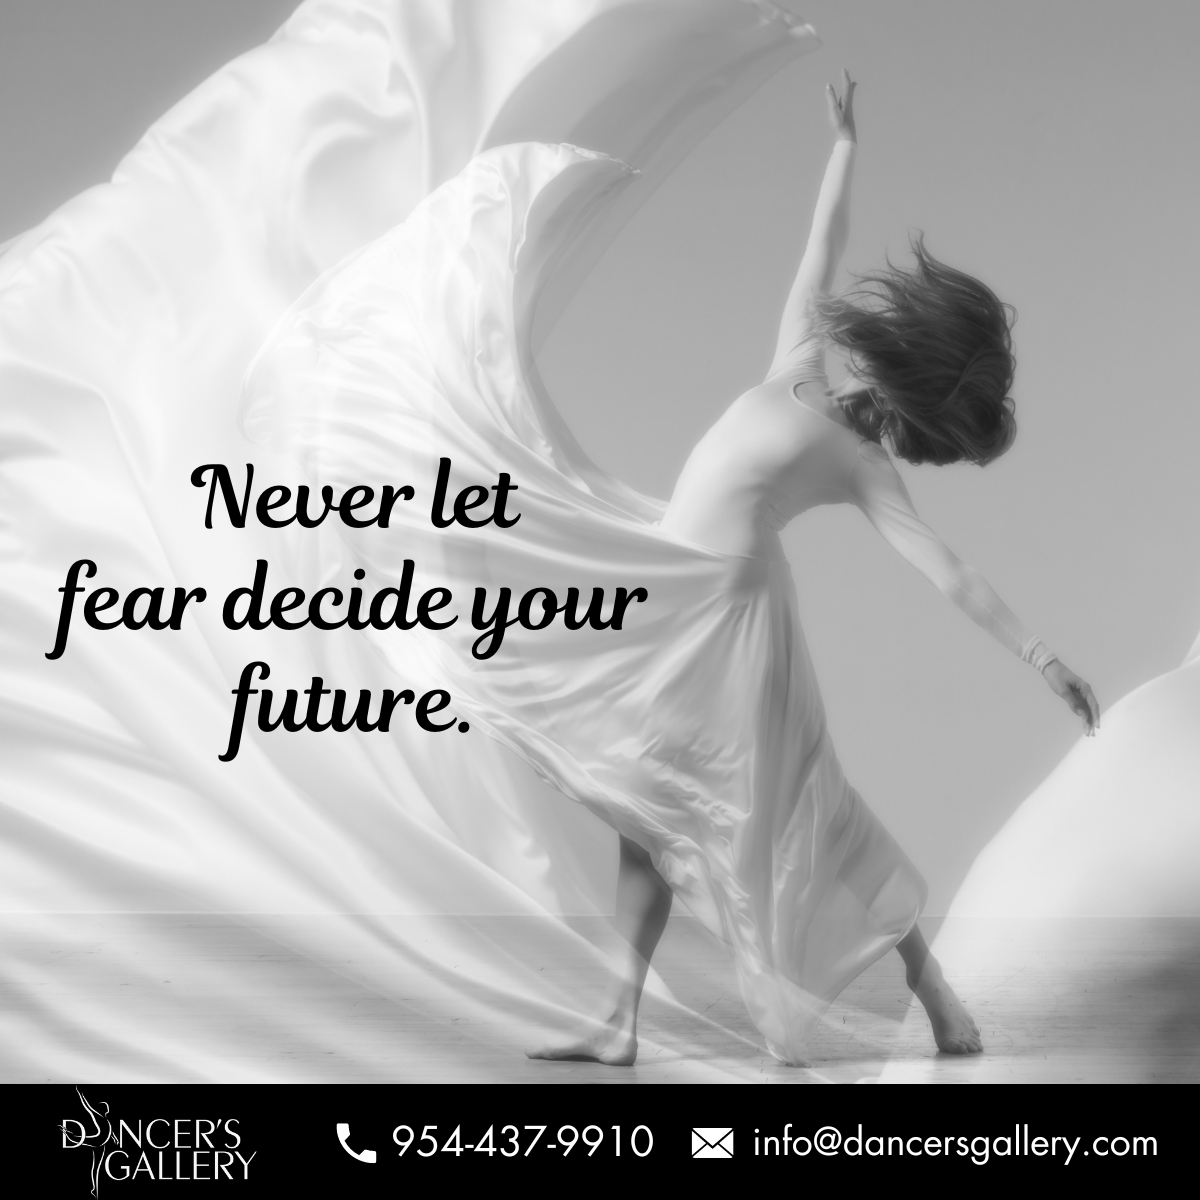 Never let fear decide your future.
 
#quoteoftheday #dancestudiomiami #danceclasses #dancelover #dancelove #dancegoals #dancelife #lovefordance #miamidanceclasses #dancestudiocoopercity #davieflorida